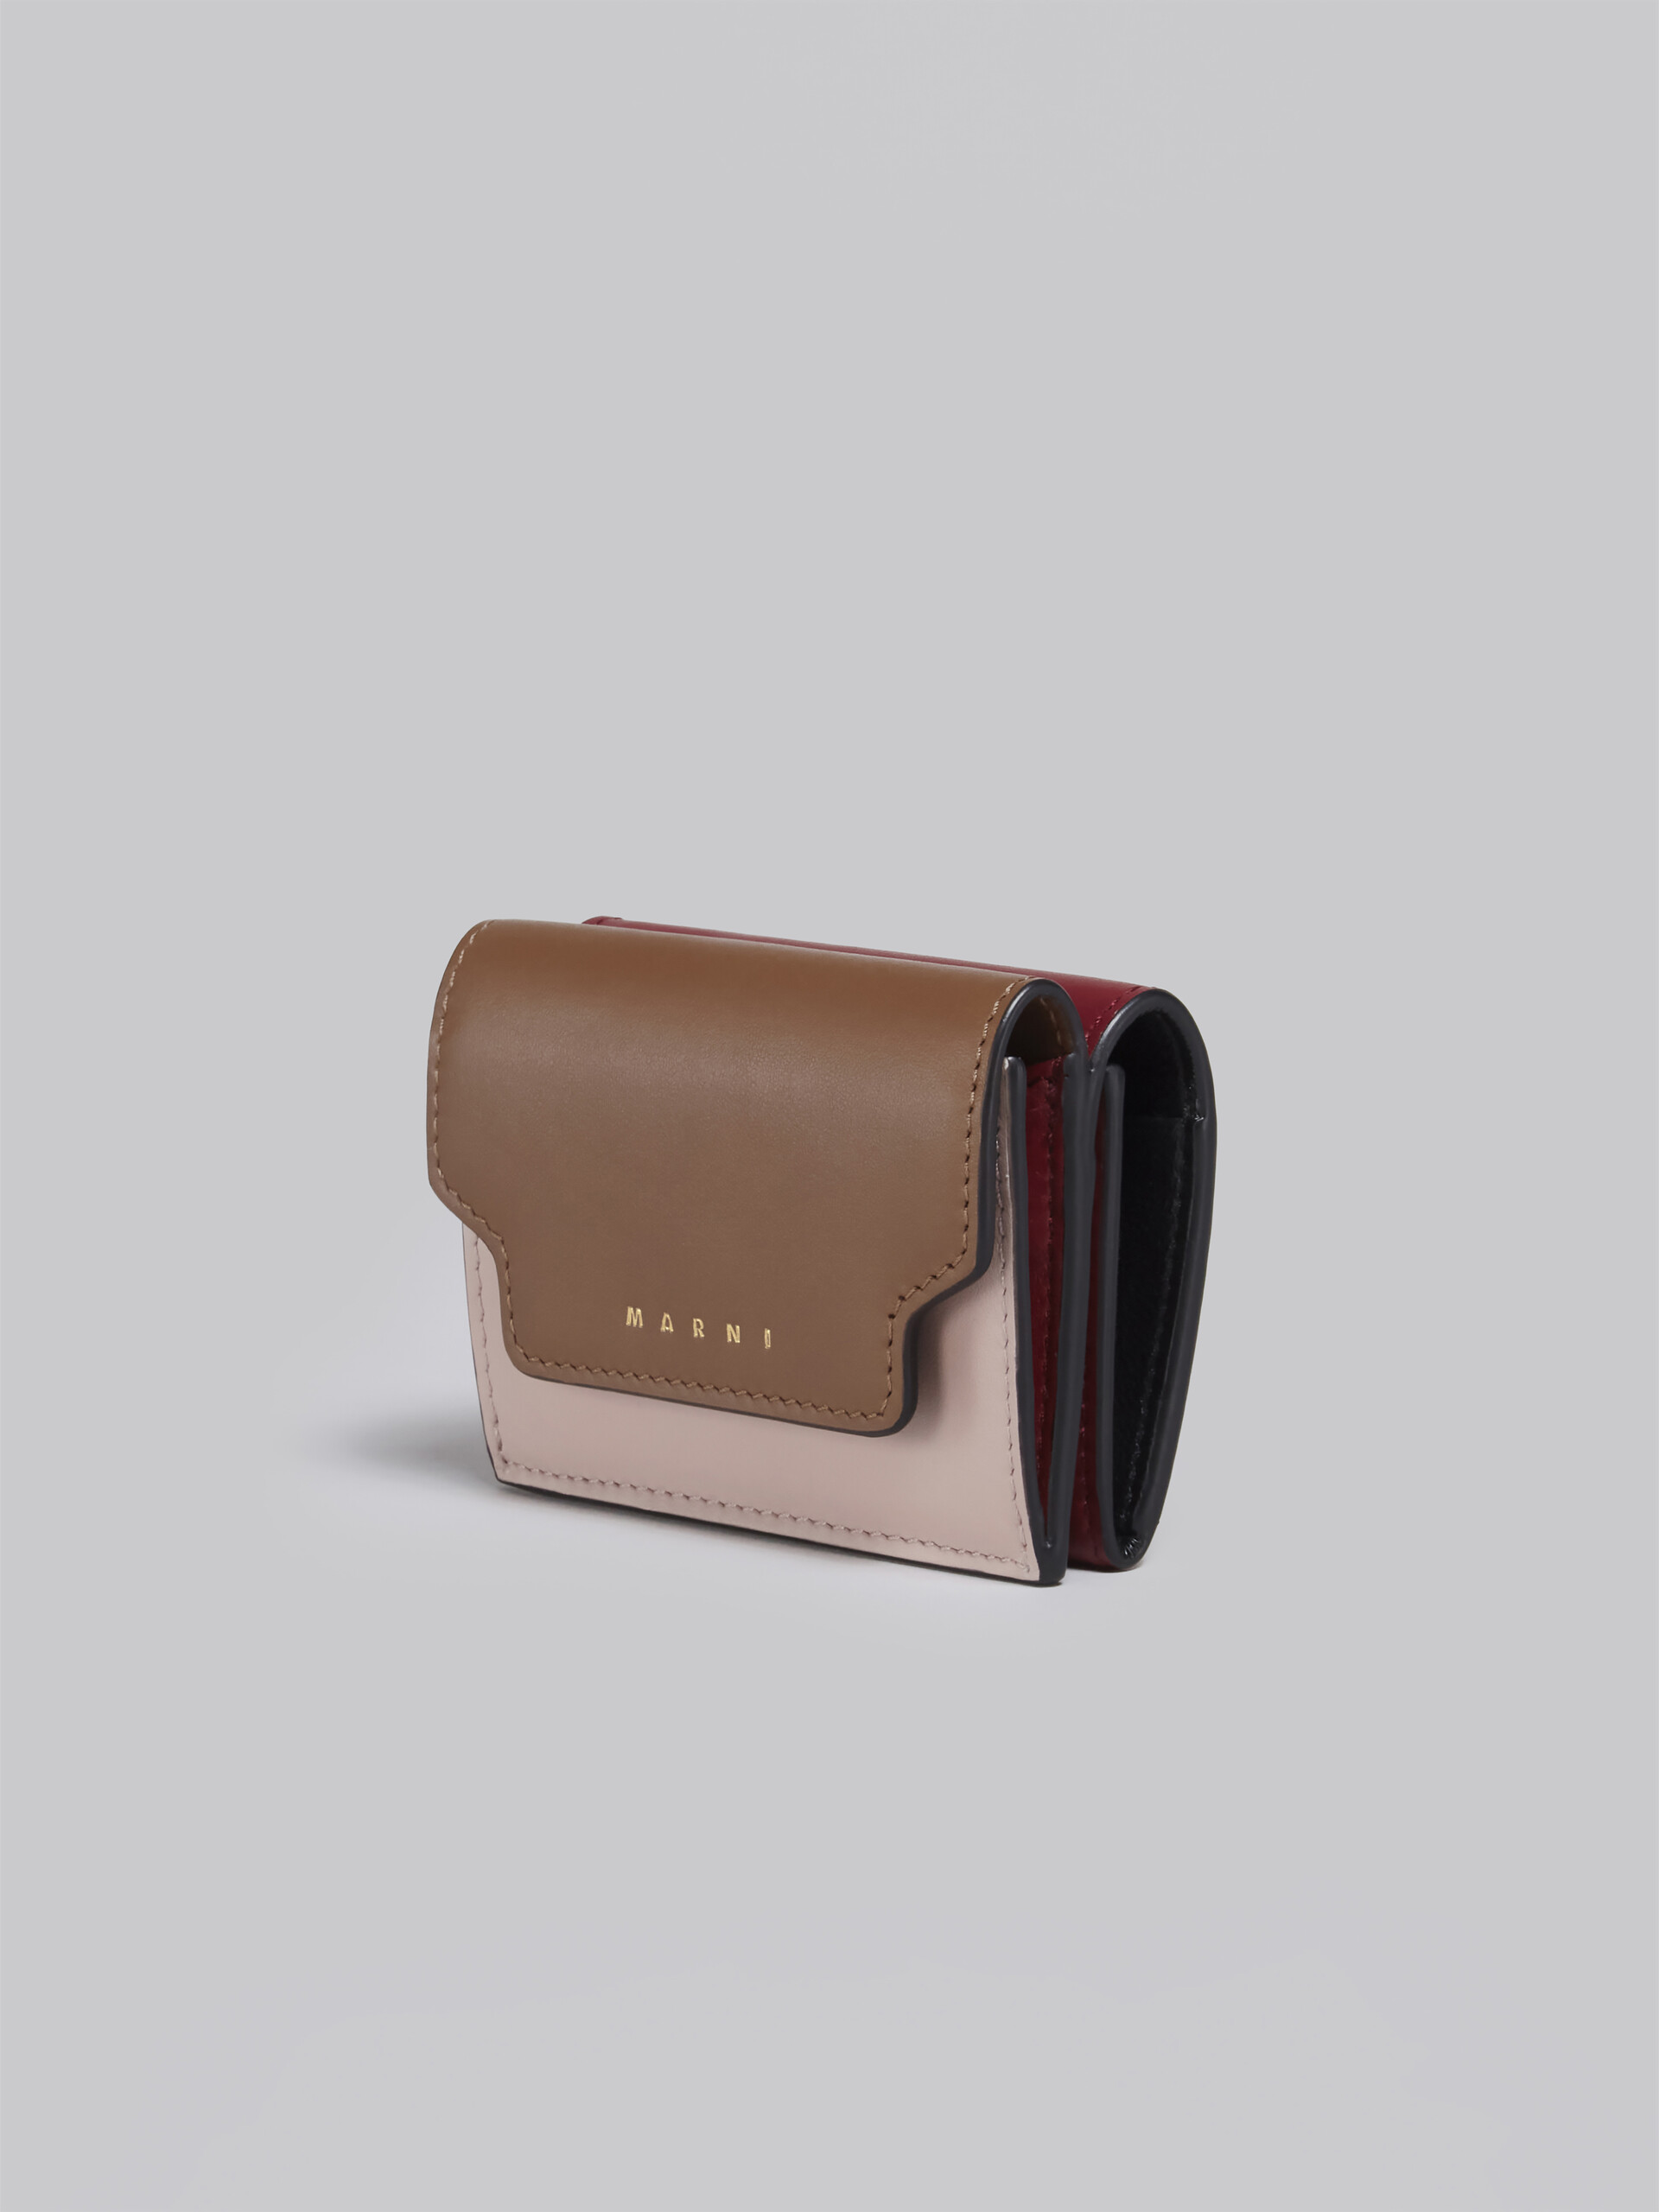 Dreifach faltbare Brieftasche aus braun-pinkem und burgunderrotem Saffianleder - Brieftaschen - Image 4